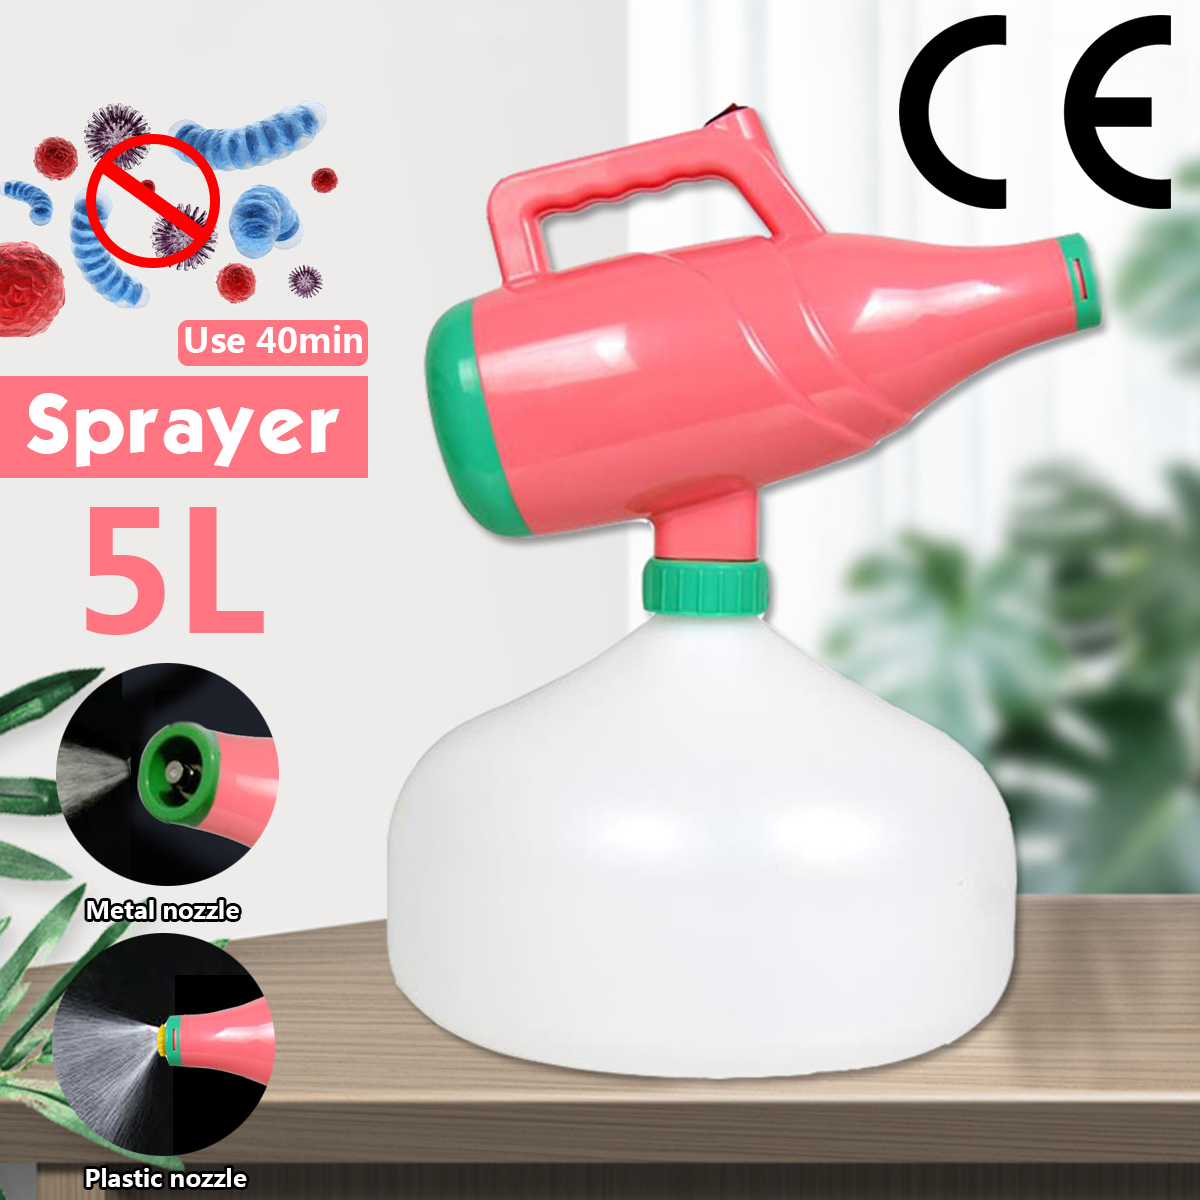 5L-Wireless-Portable-Nebulizer-Sprayer-Hotels-Residence-Community-Office-Disinfection-Sterilization--1704937-2